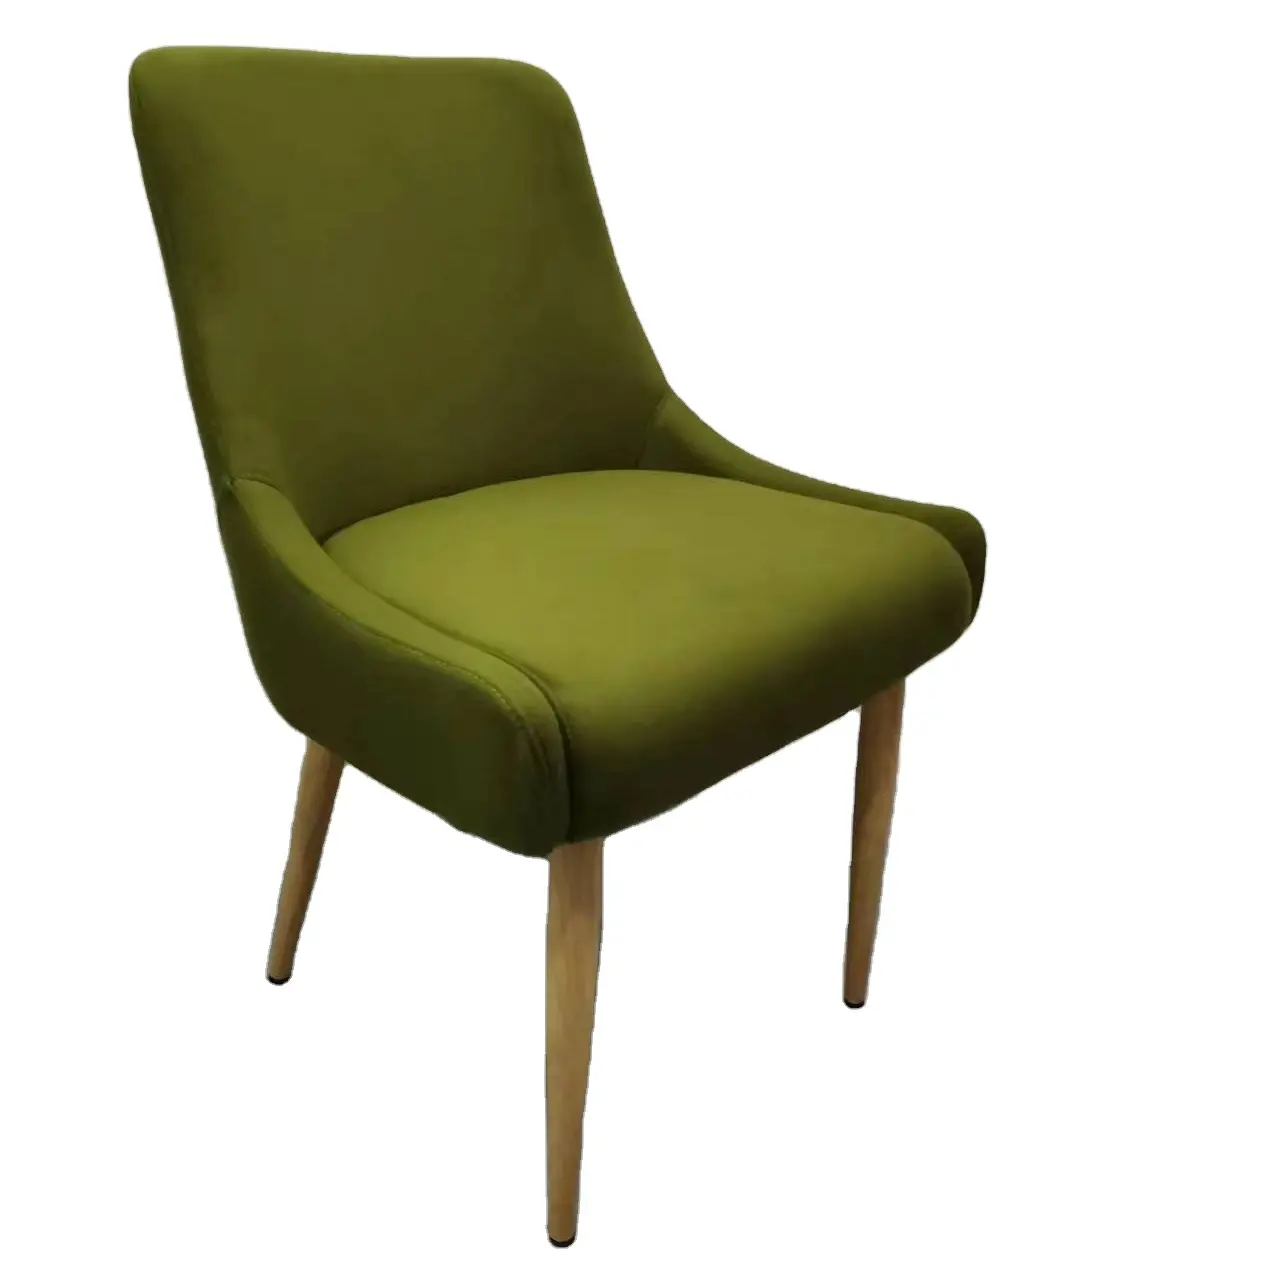 Metal ahşap bacak yeşil kadife kumaş yemek sandalyesi